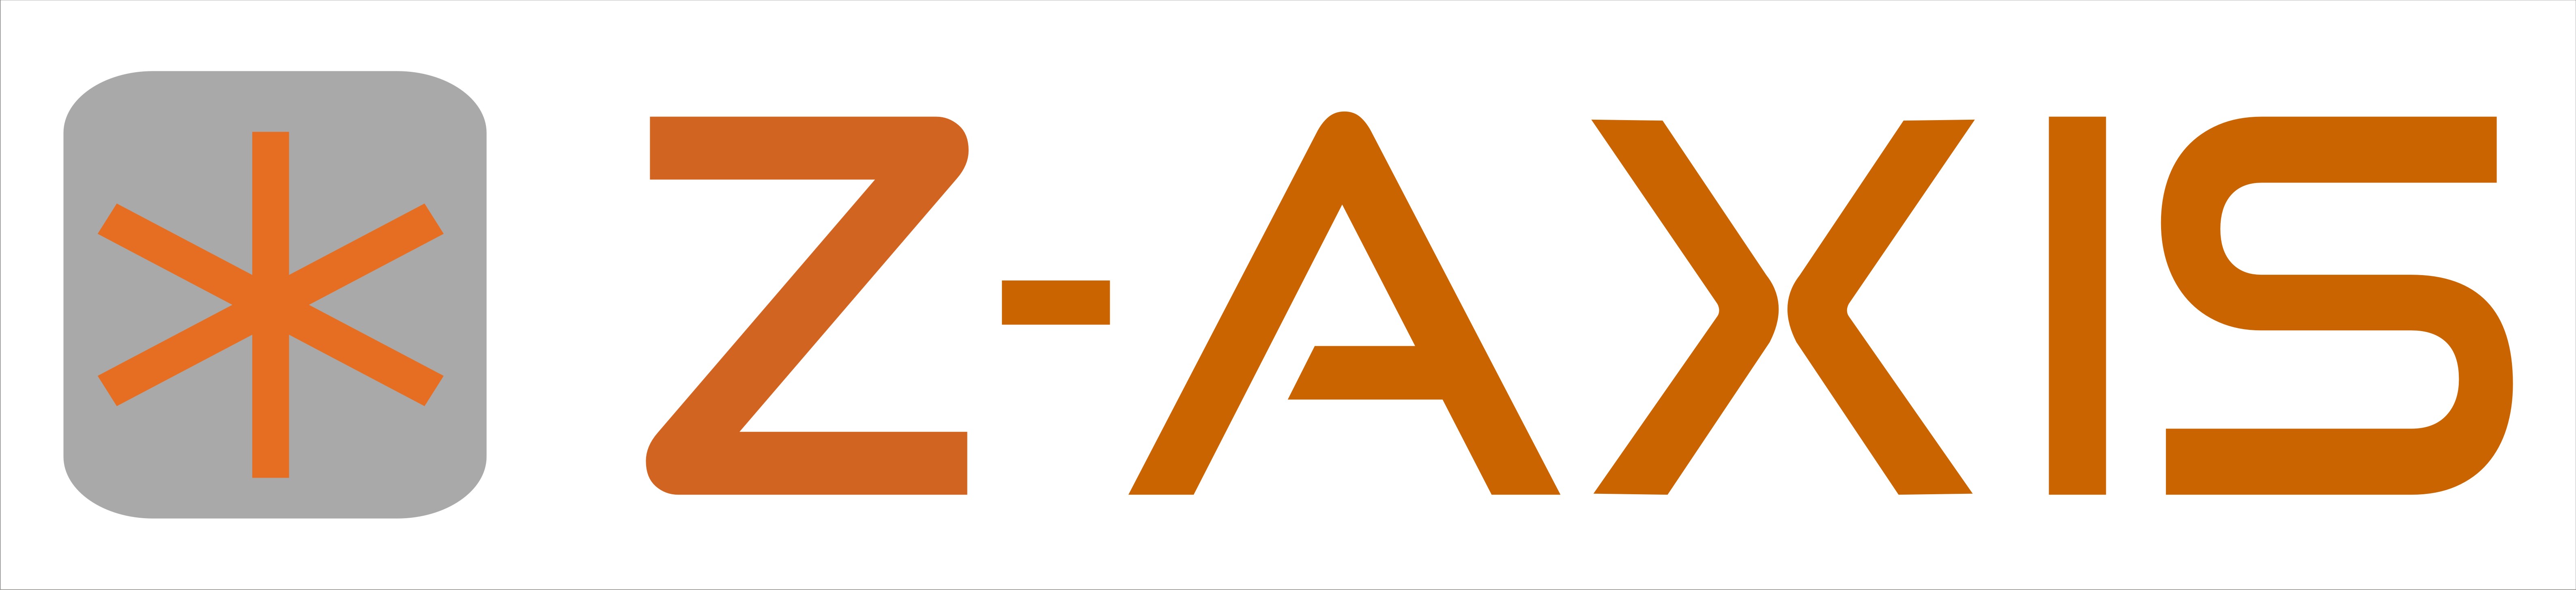 Z-Axis Logo photo - 1